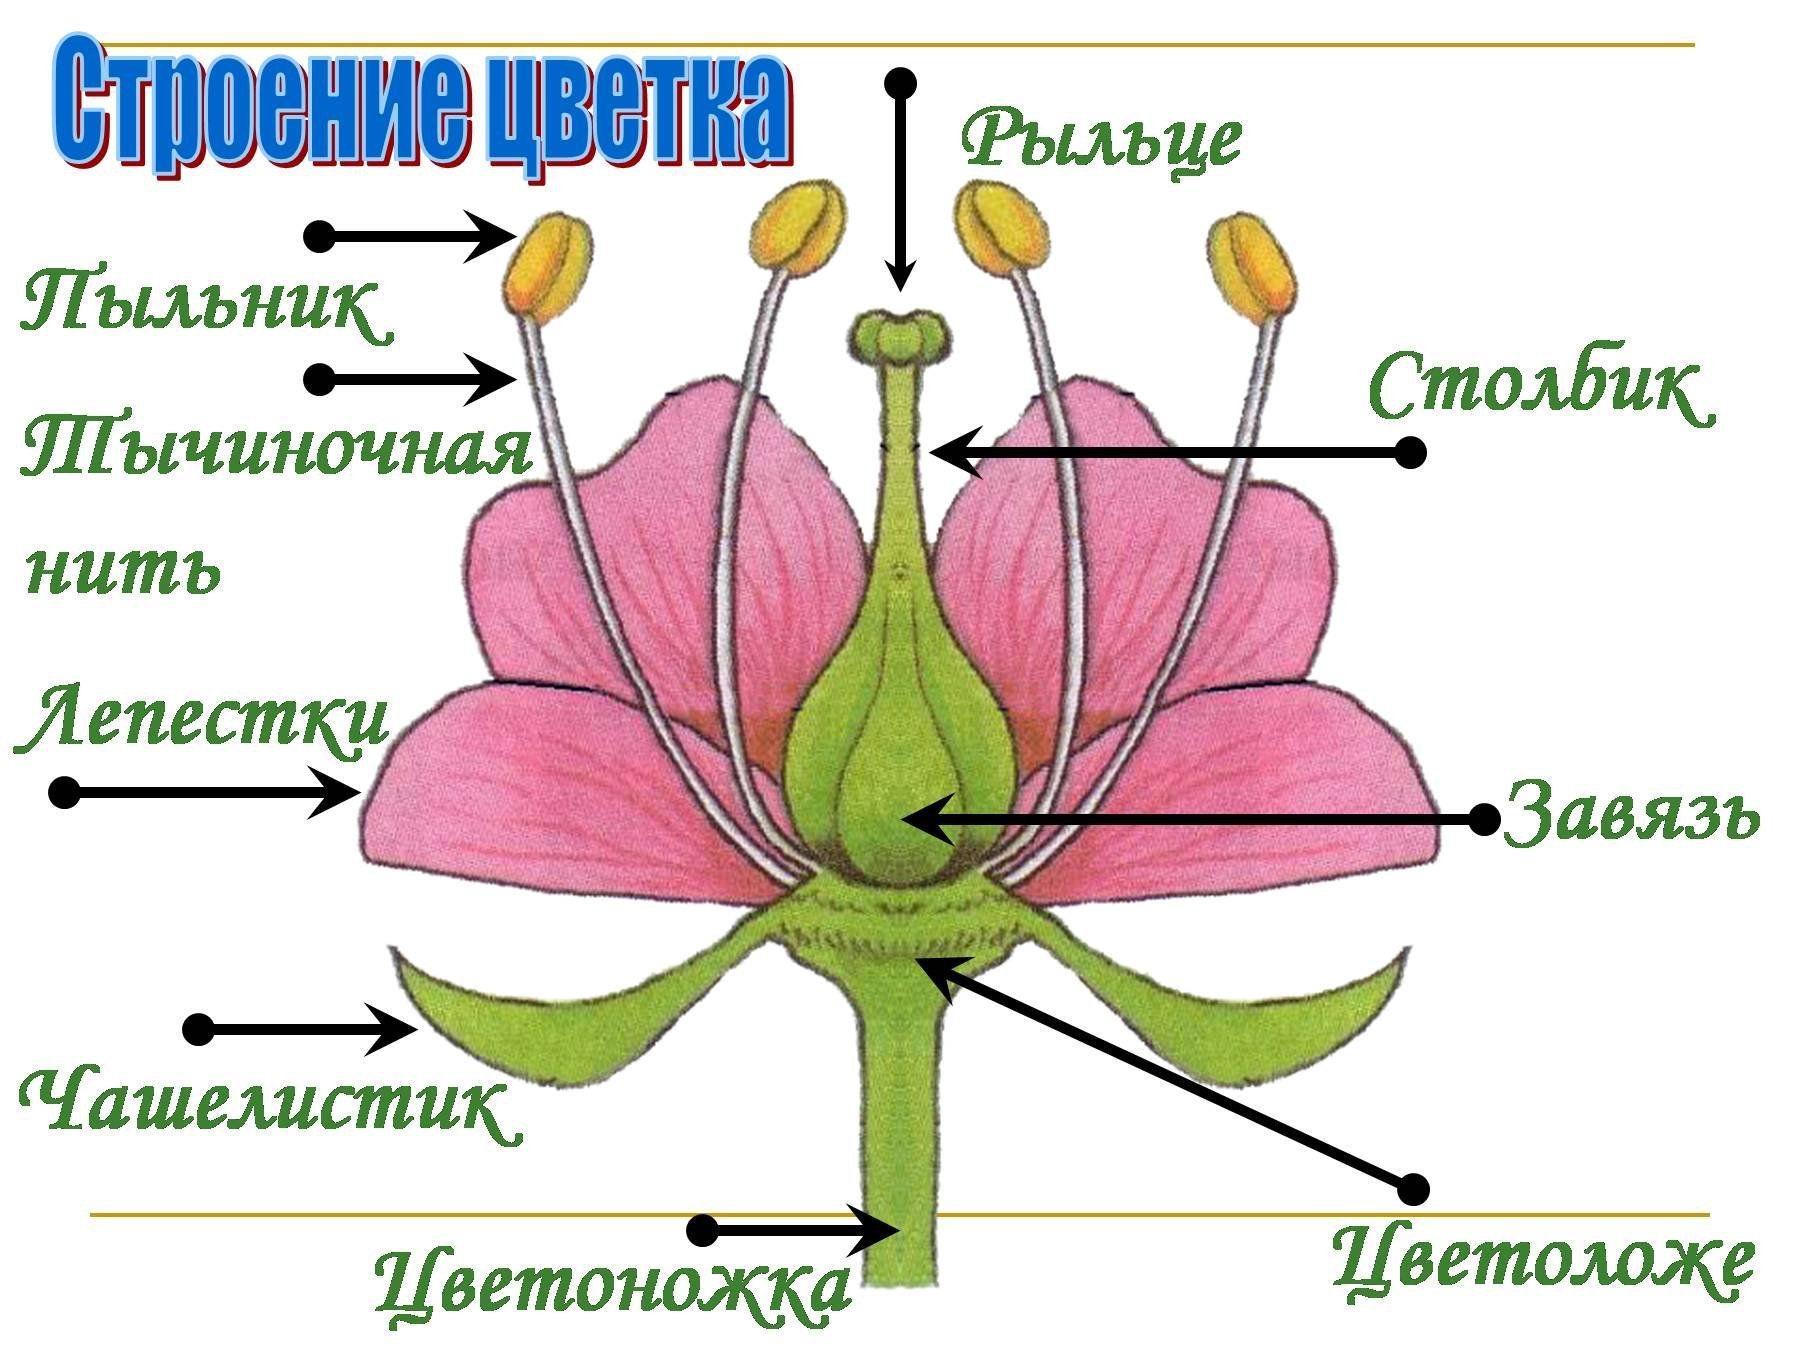 Простые цветки биология. Схема строения цветка 6 класс биология. Схема цветка биология 6 класс. Строение цветка 6 класс биология рисунок из учебника. Строение цветка покрытосеменных растений.